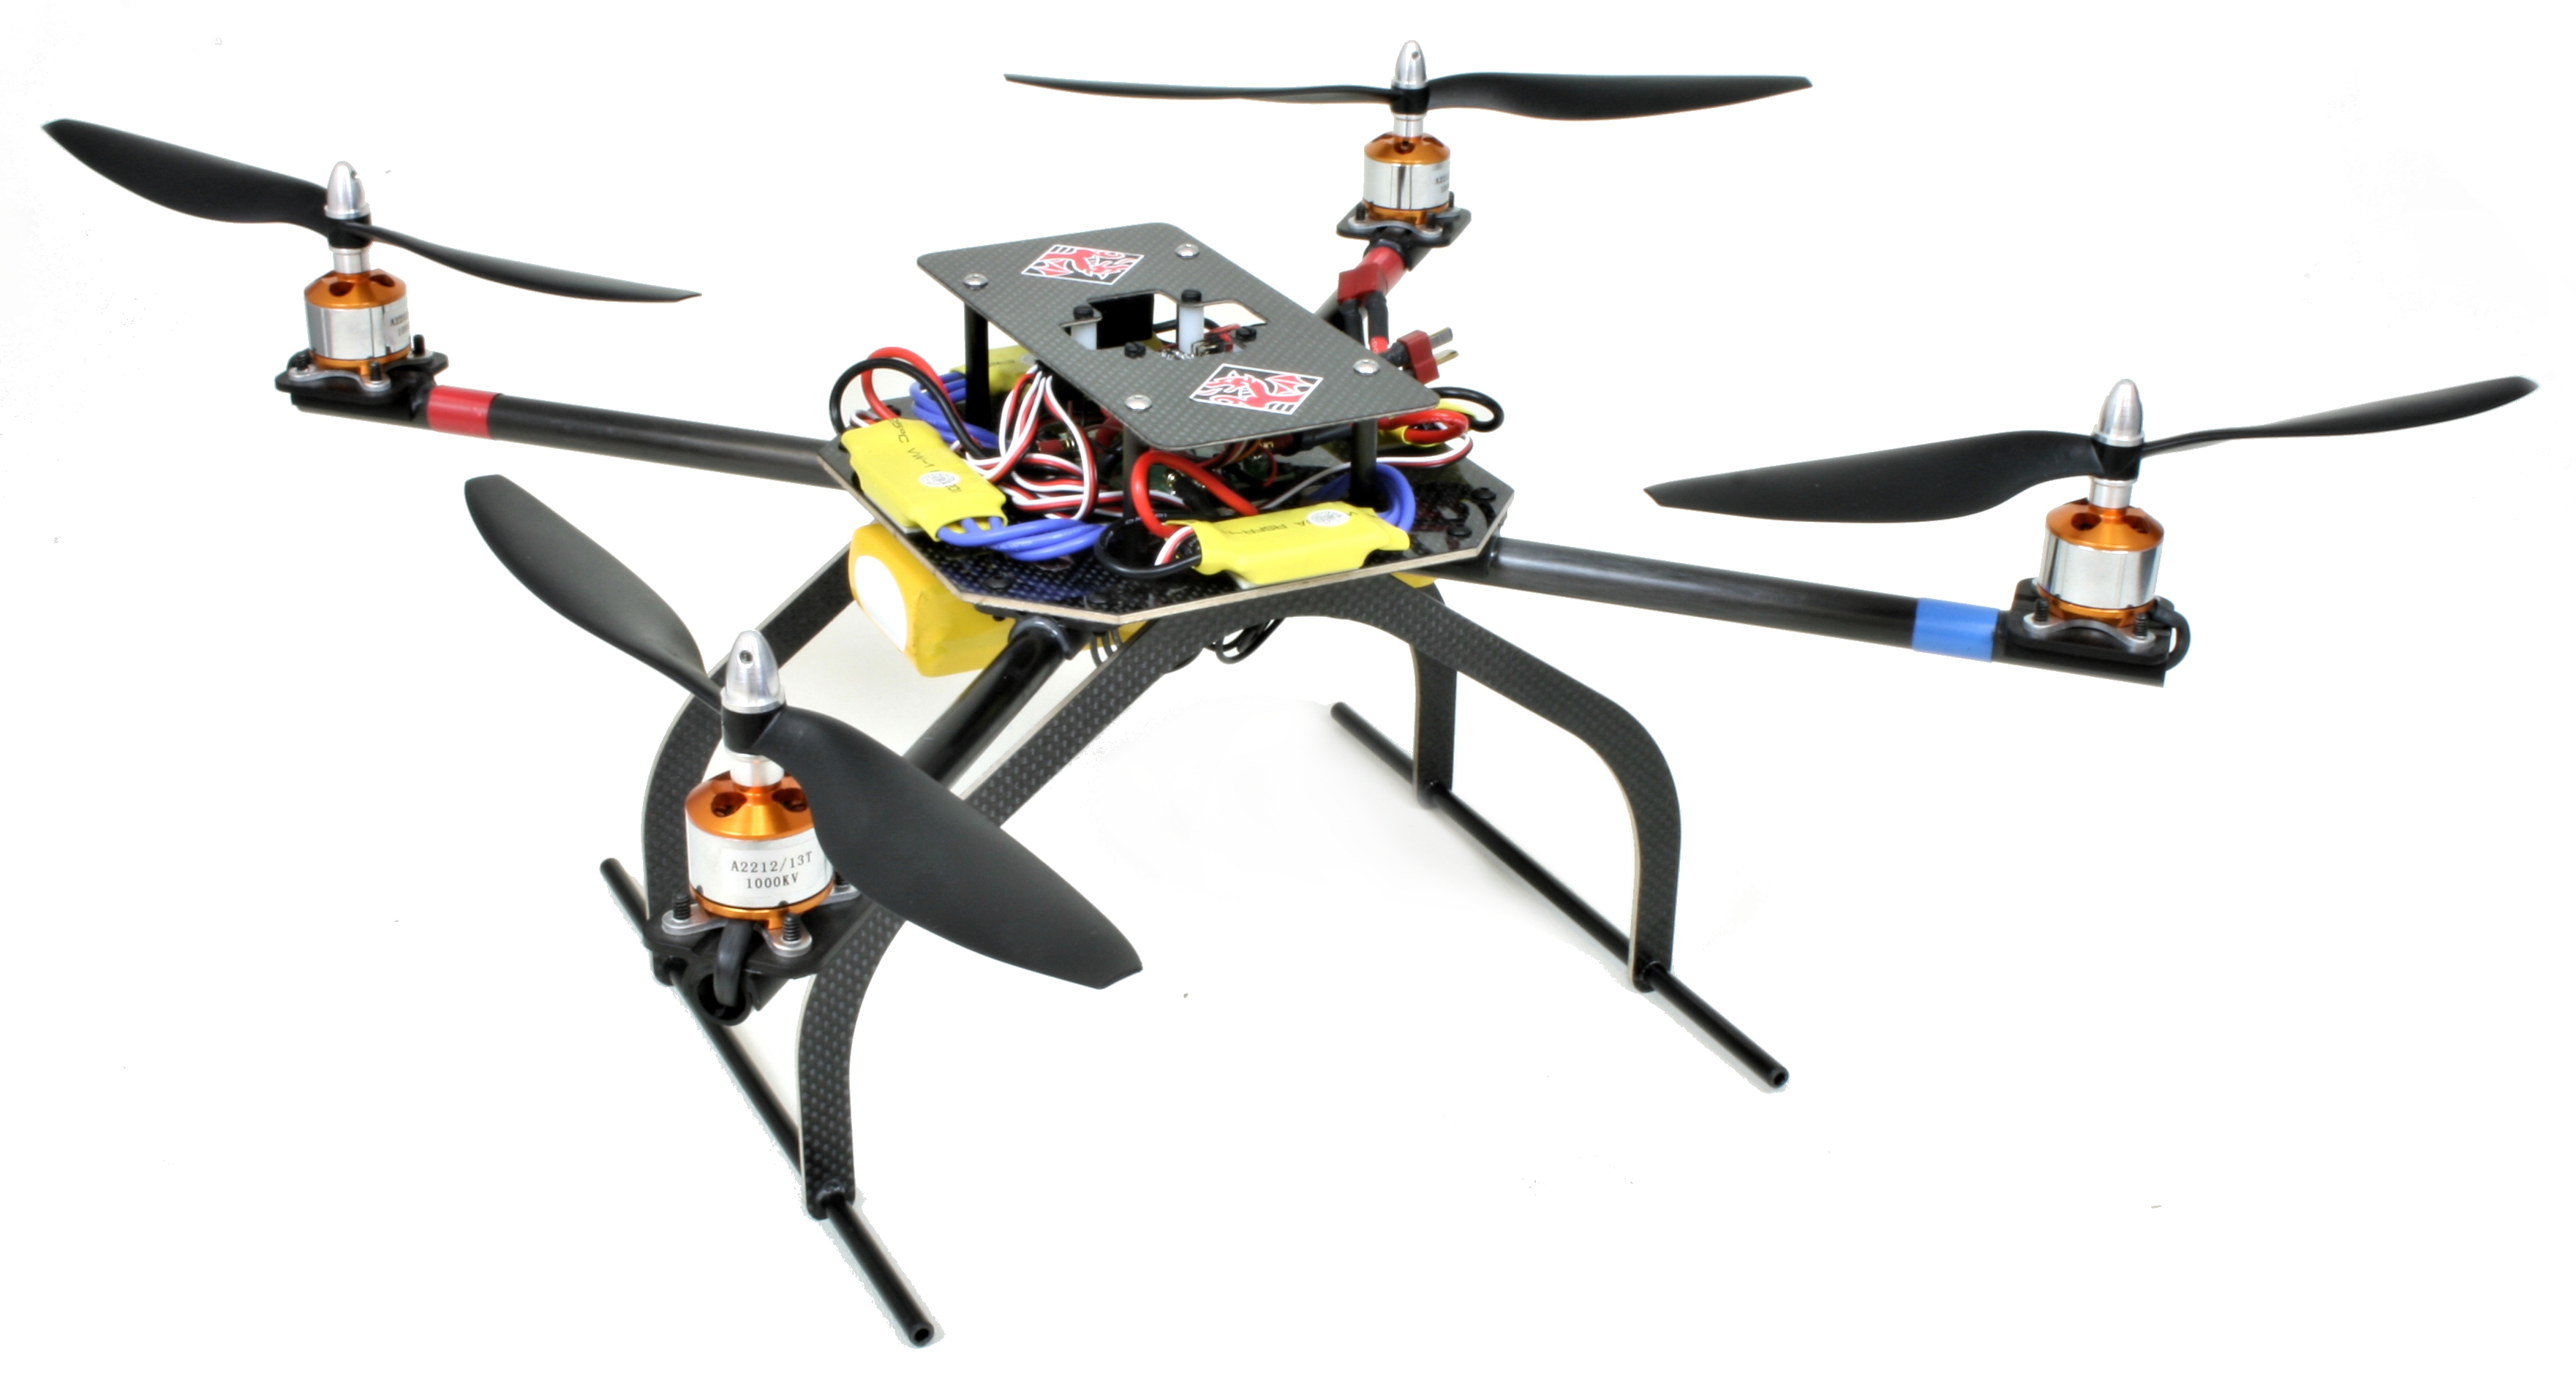 DragonPlate UAV Quadcopter with Electronics.